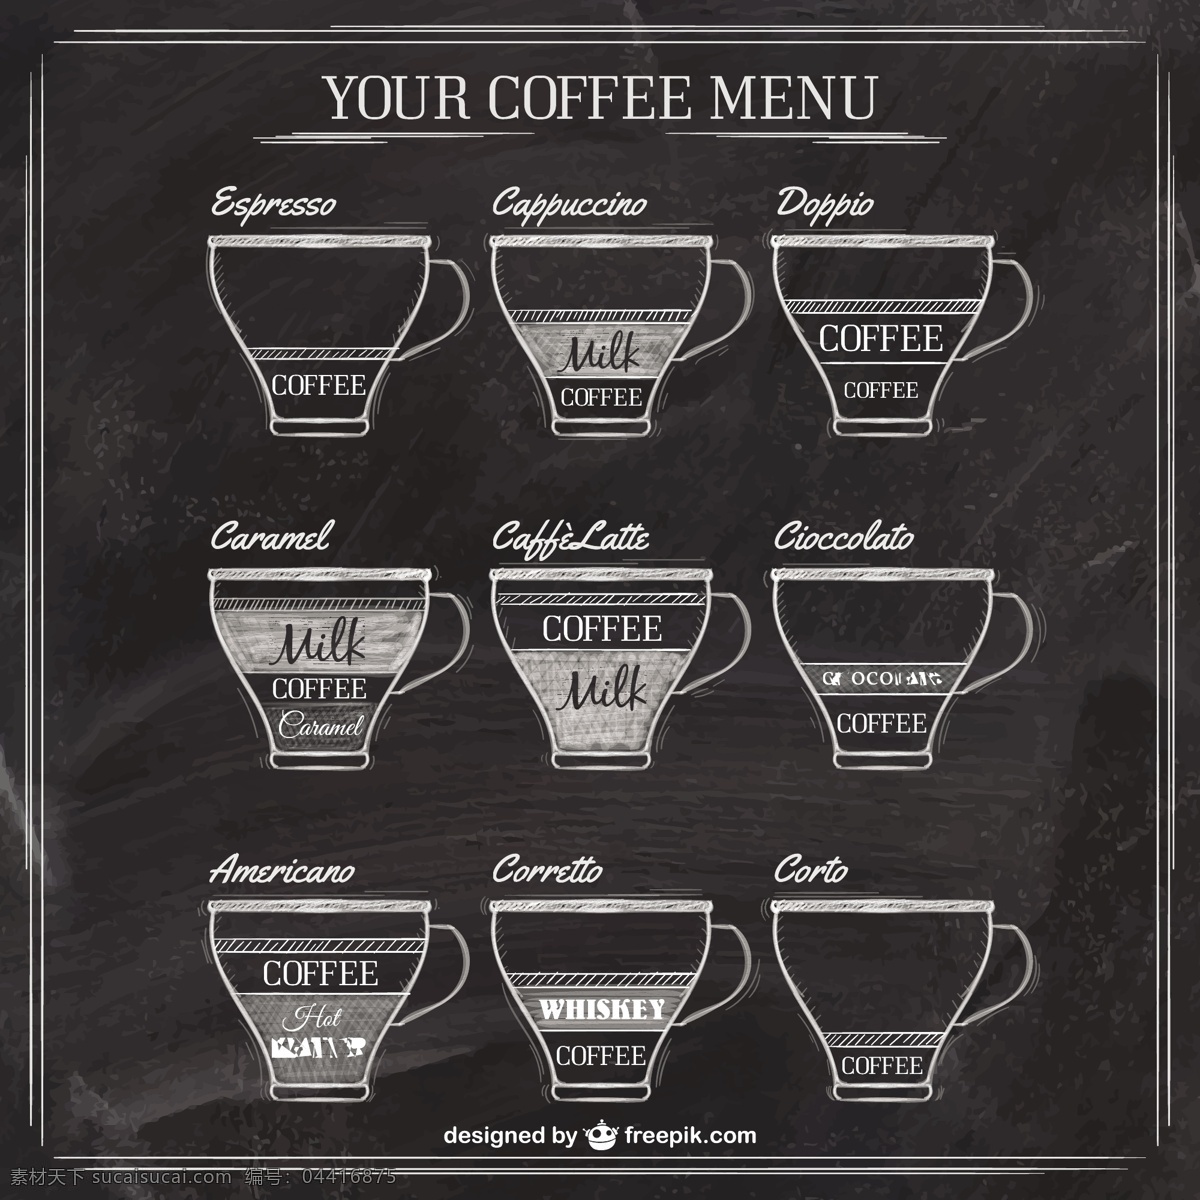 黑板 上 咖啡 菜单 手 手绘 饮料 咖啡杯 杯 绘画 插图 手绘图 绘制 卡布奇诺 杯子 粗略 意大利浓咖啡 美式咖啡 黑色